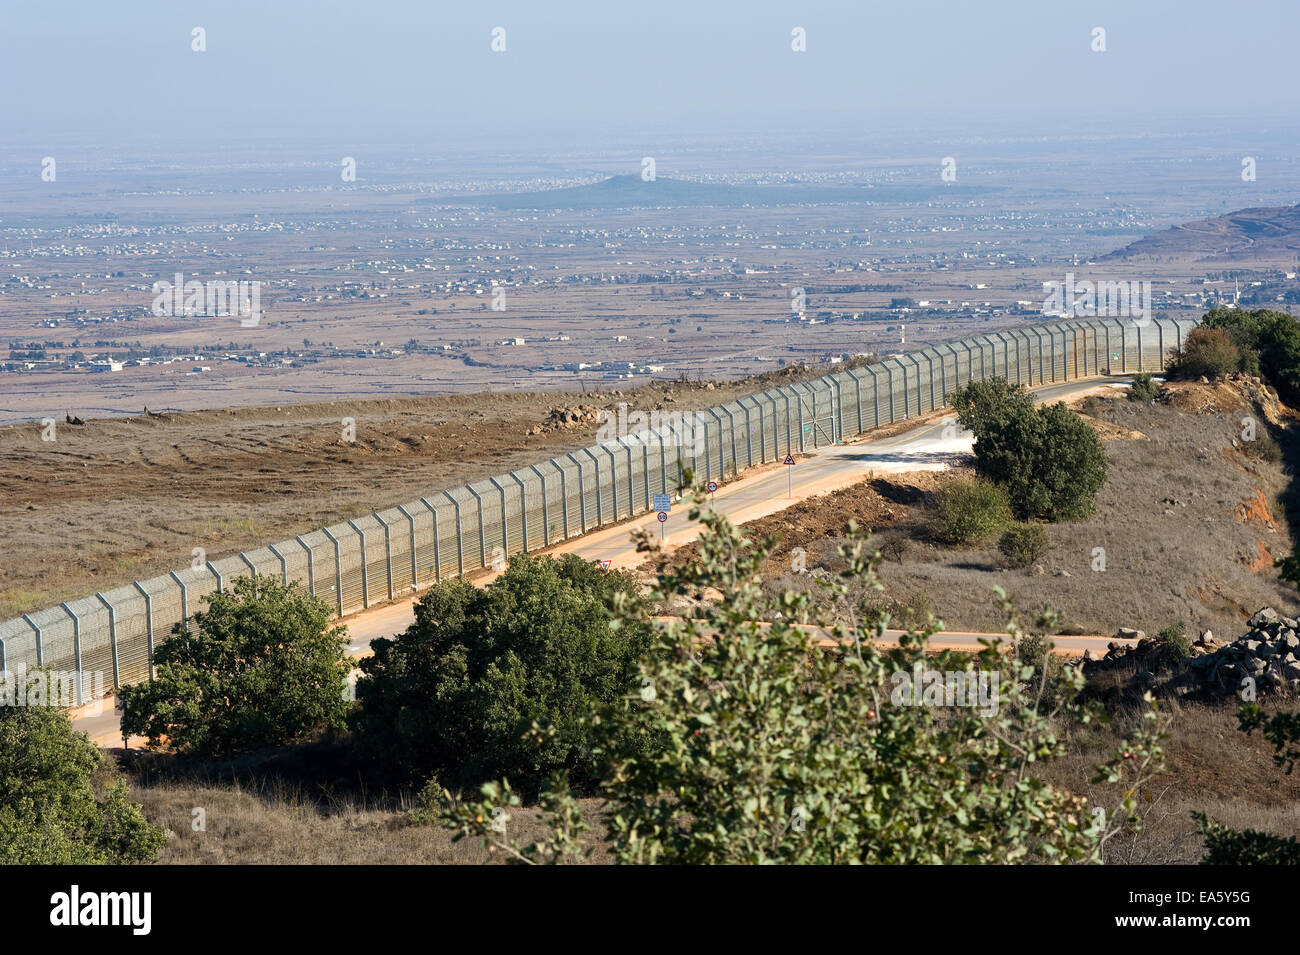 La clôture de la frontière entre Israël et la Syrie comme vu à partir d'une colline sur les hauteurs du Golan en Israël Banque D'Images